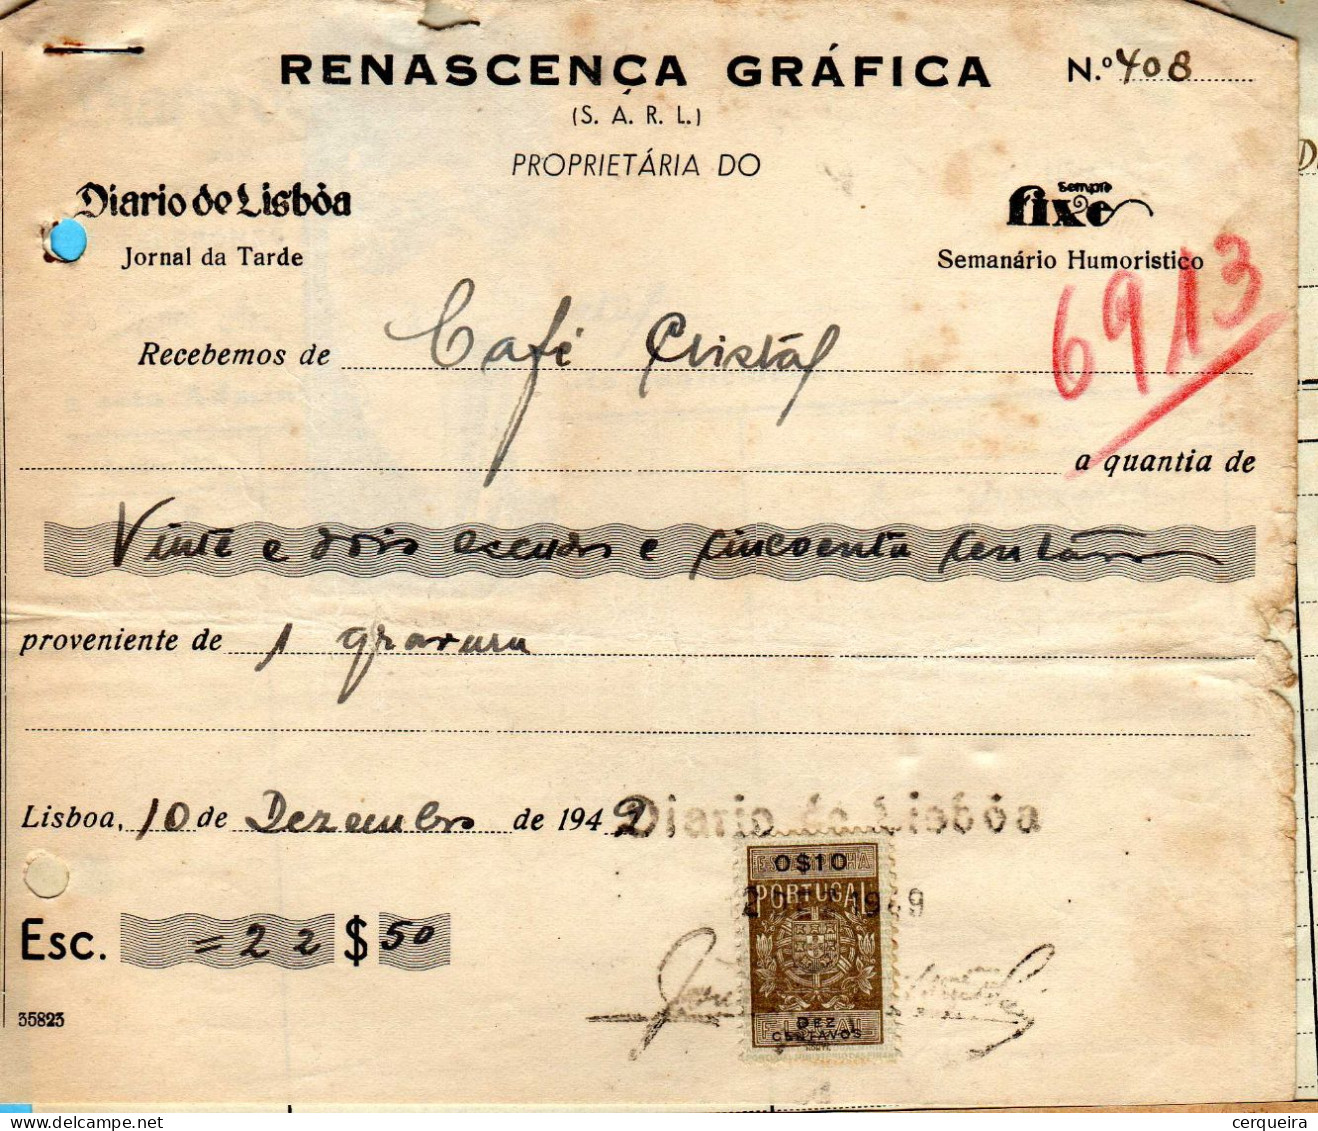 FATURA-RENASCENÇA GRAFICA - Cartas & Documentos